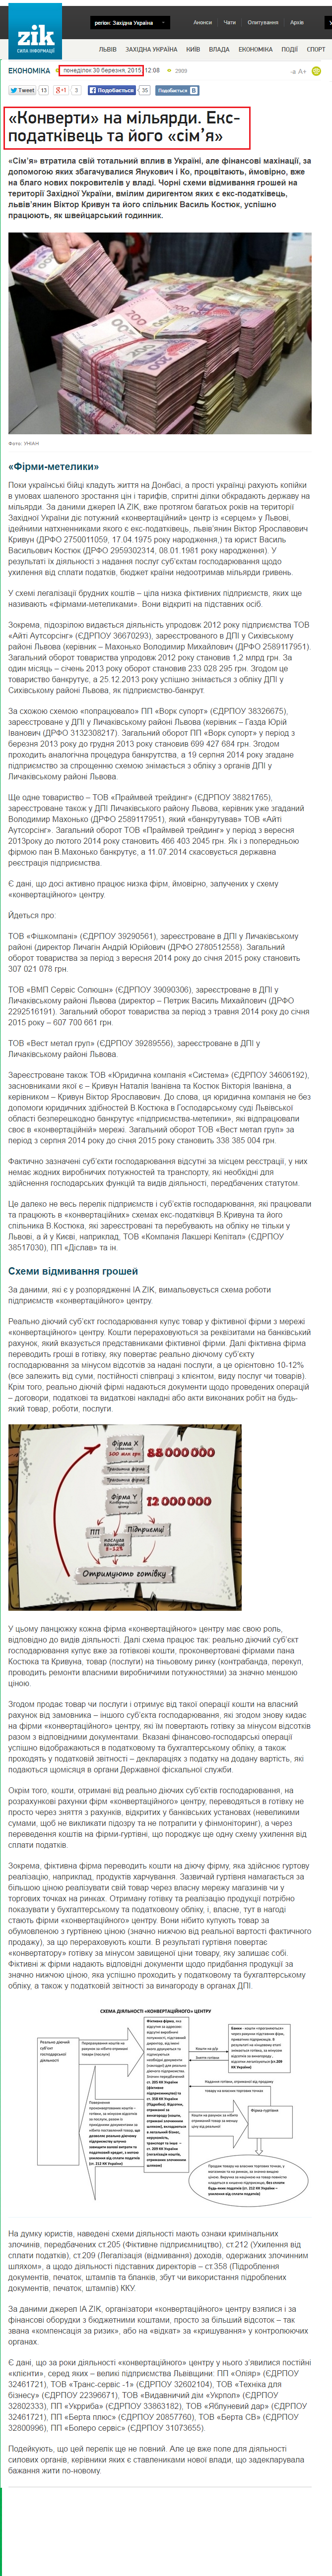 http://zik.ua/ua/analytics/2015/03/30/konverty_na_milyardy_ekspodatkivets_ta_yogo_simya_576695